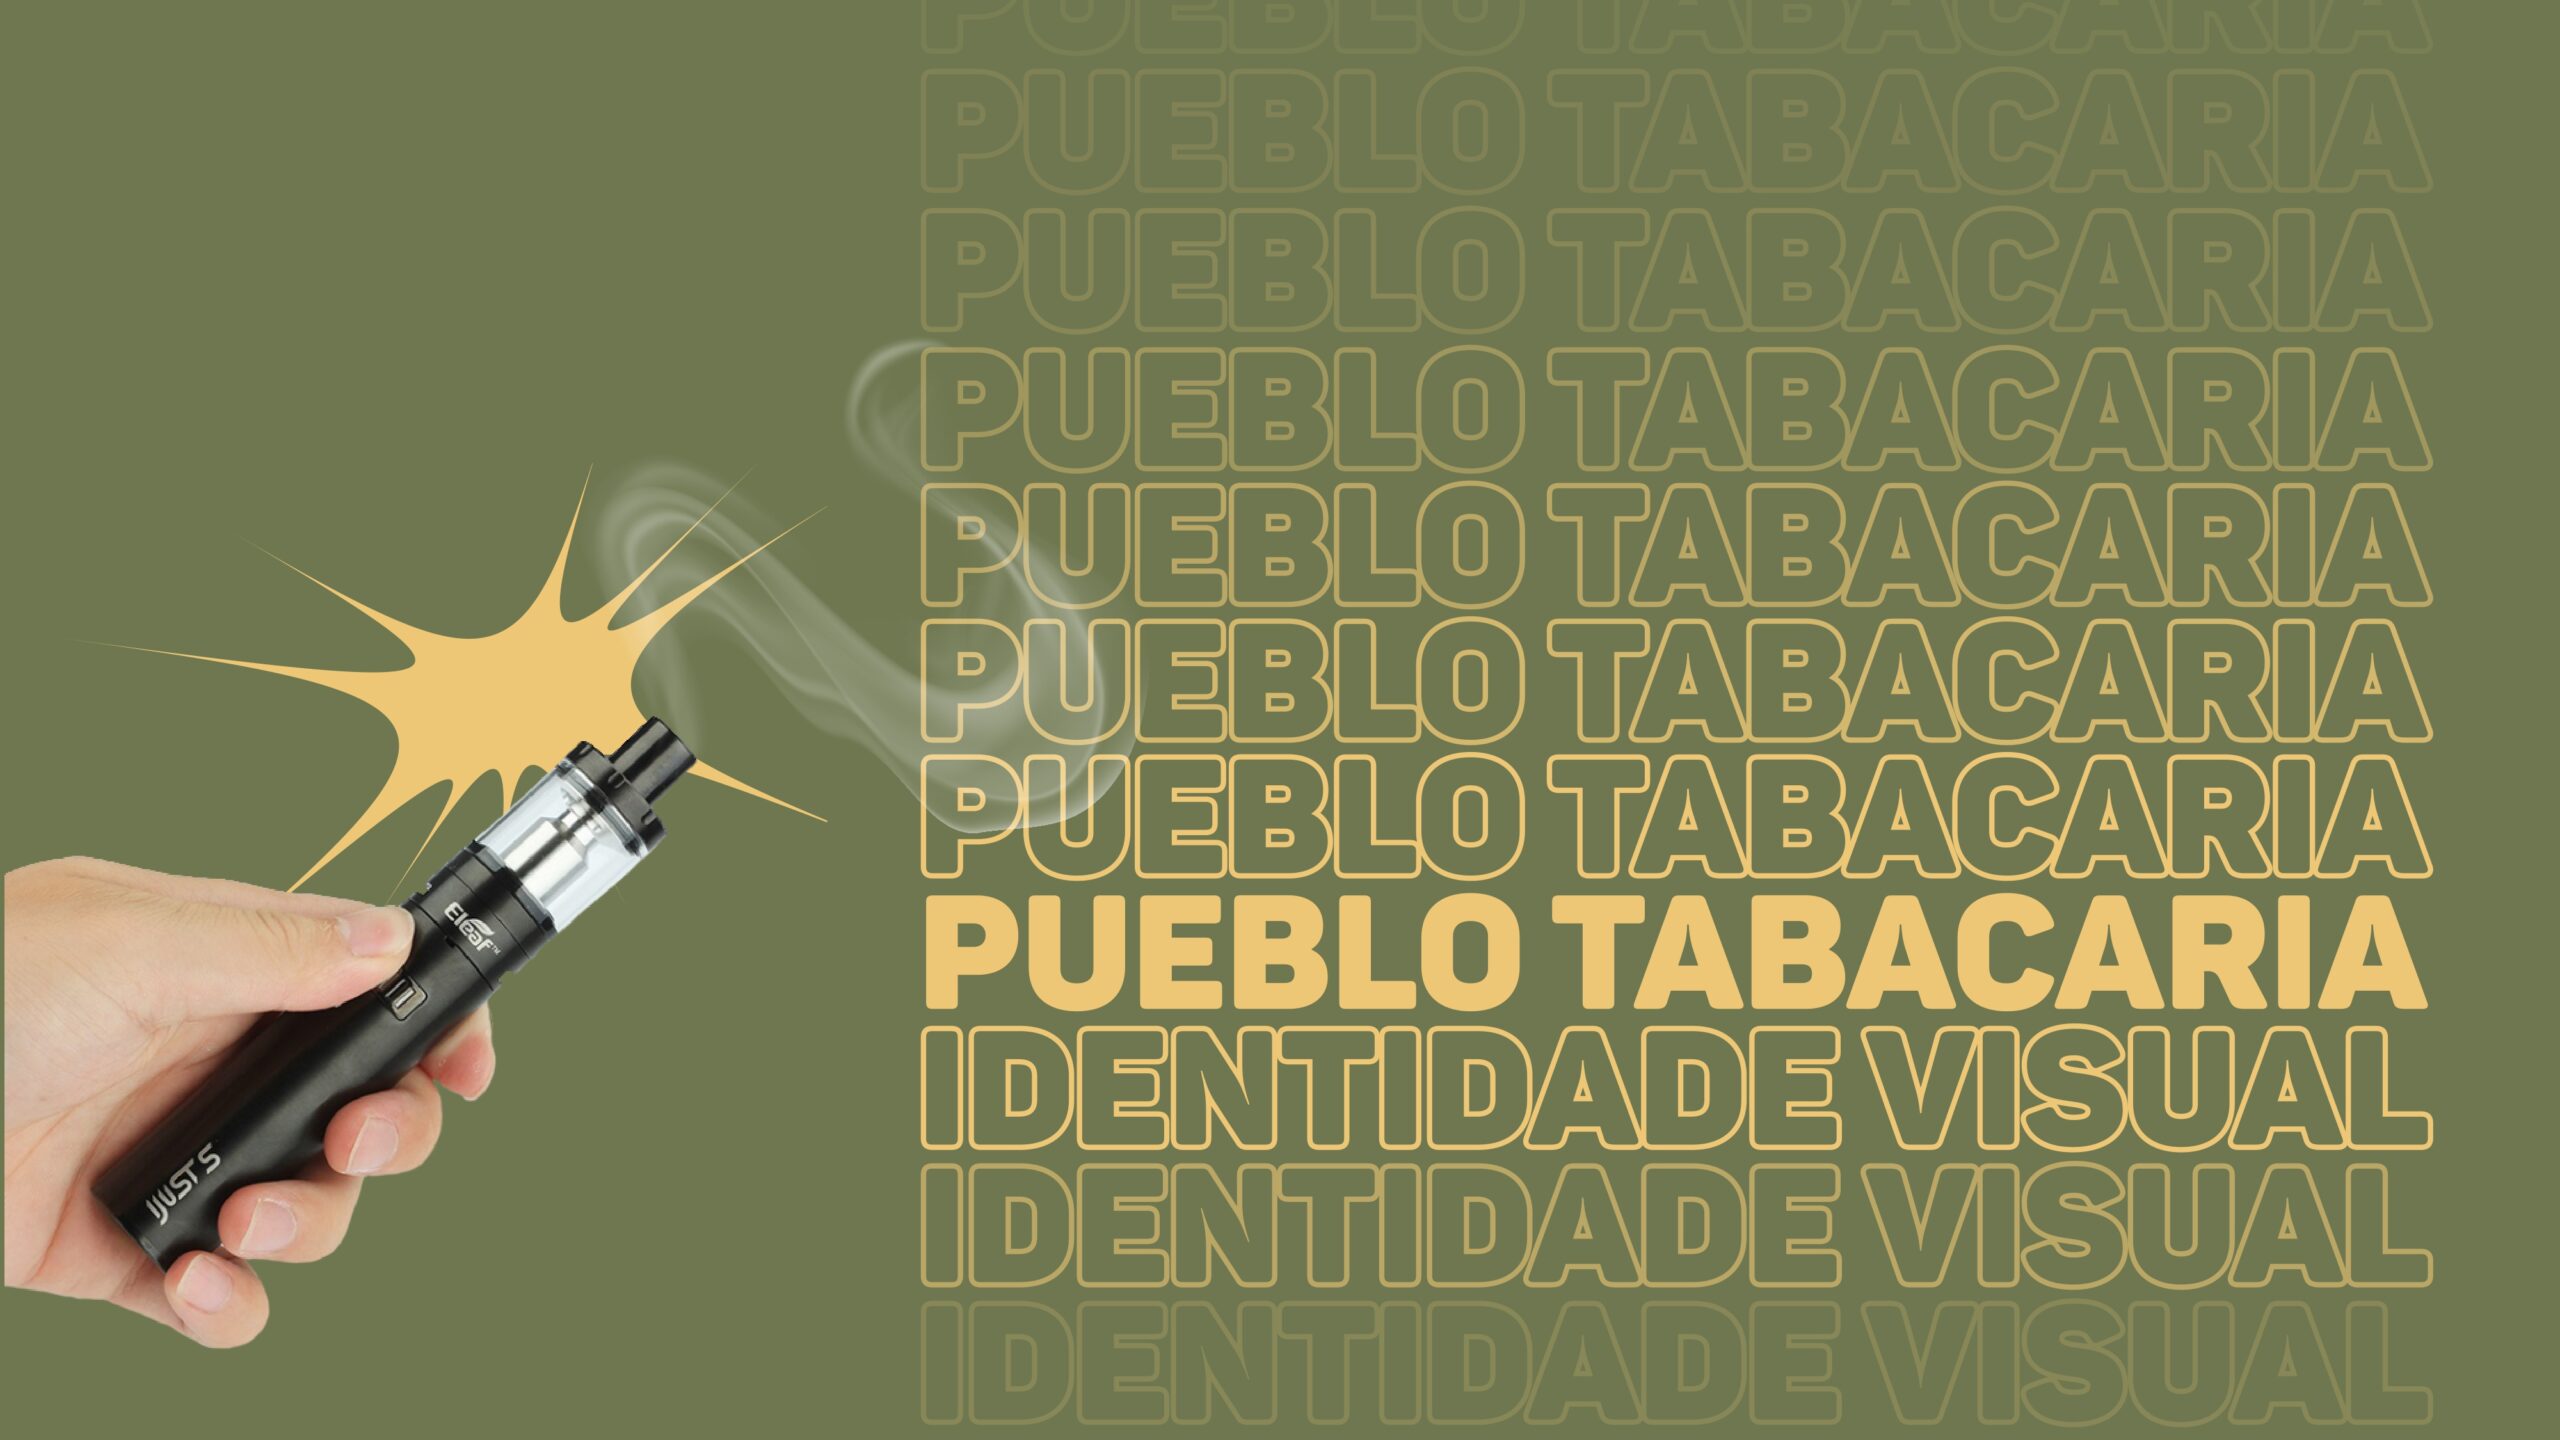 apresentação pueblo tabacaria_pages-to-jpg-0001